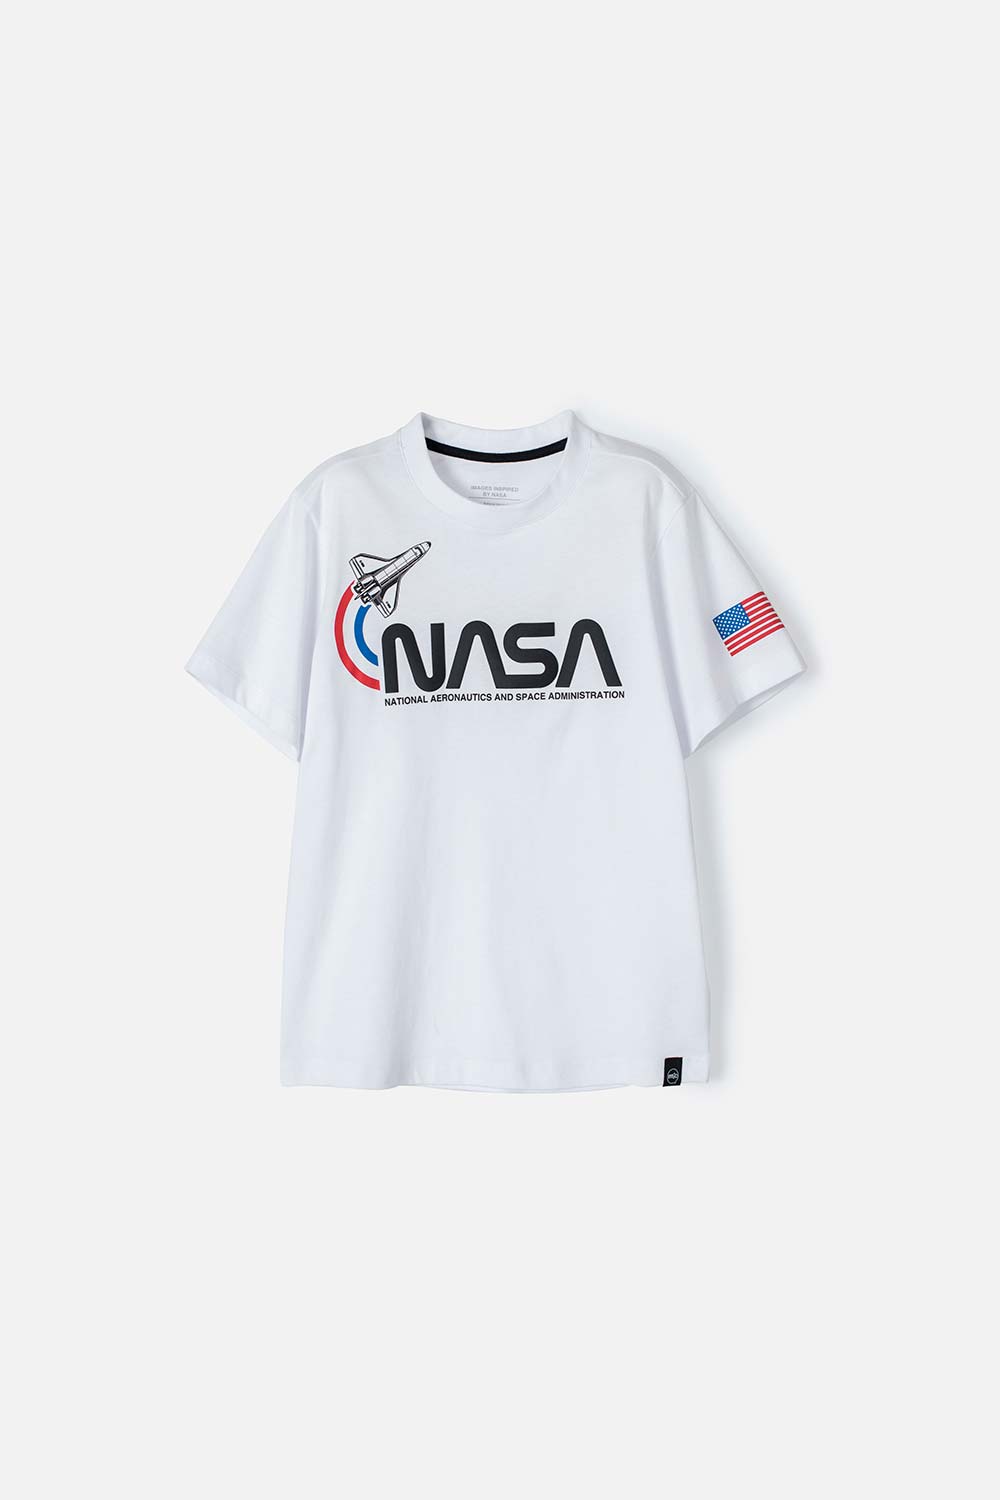 Camiseta Blanca Niña Nasa Logo ADN